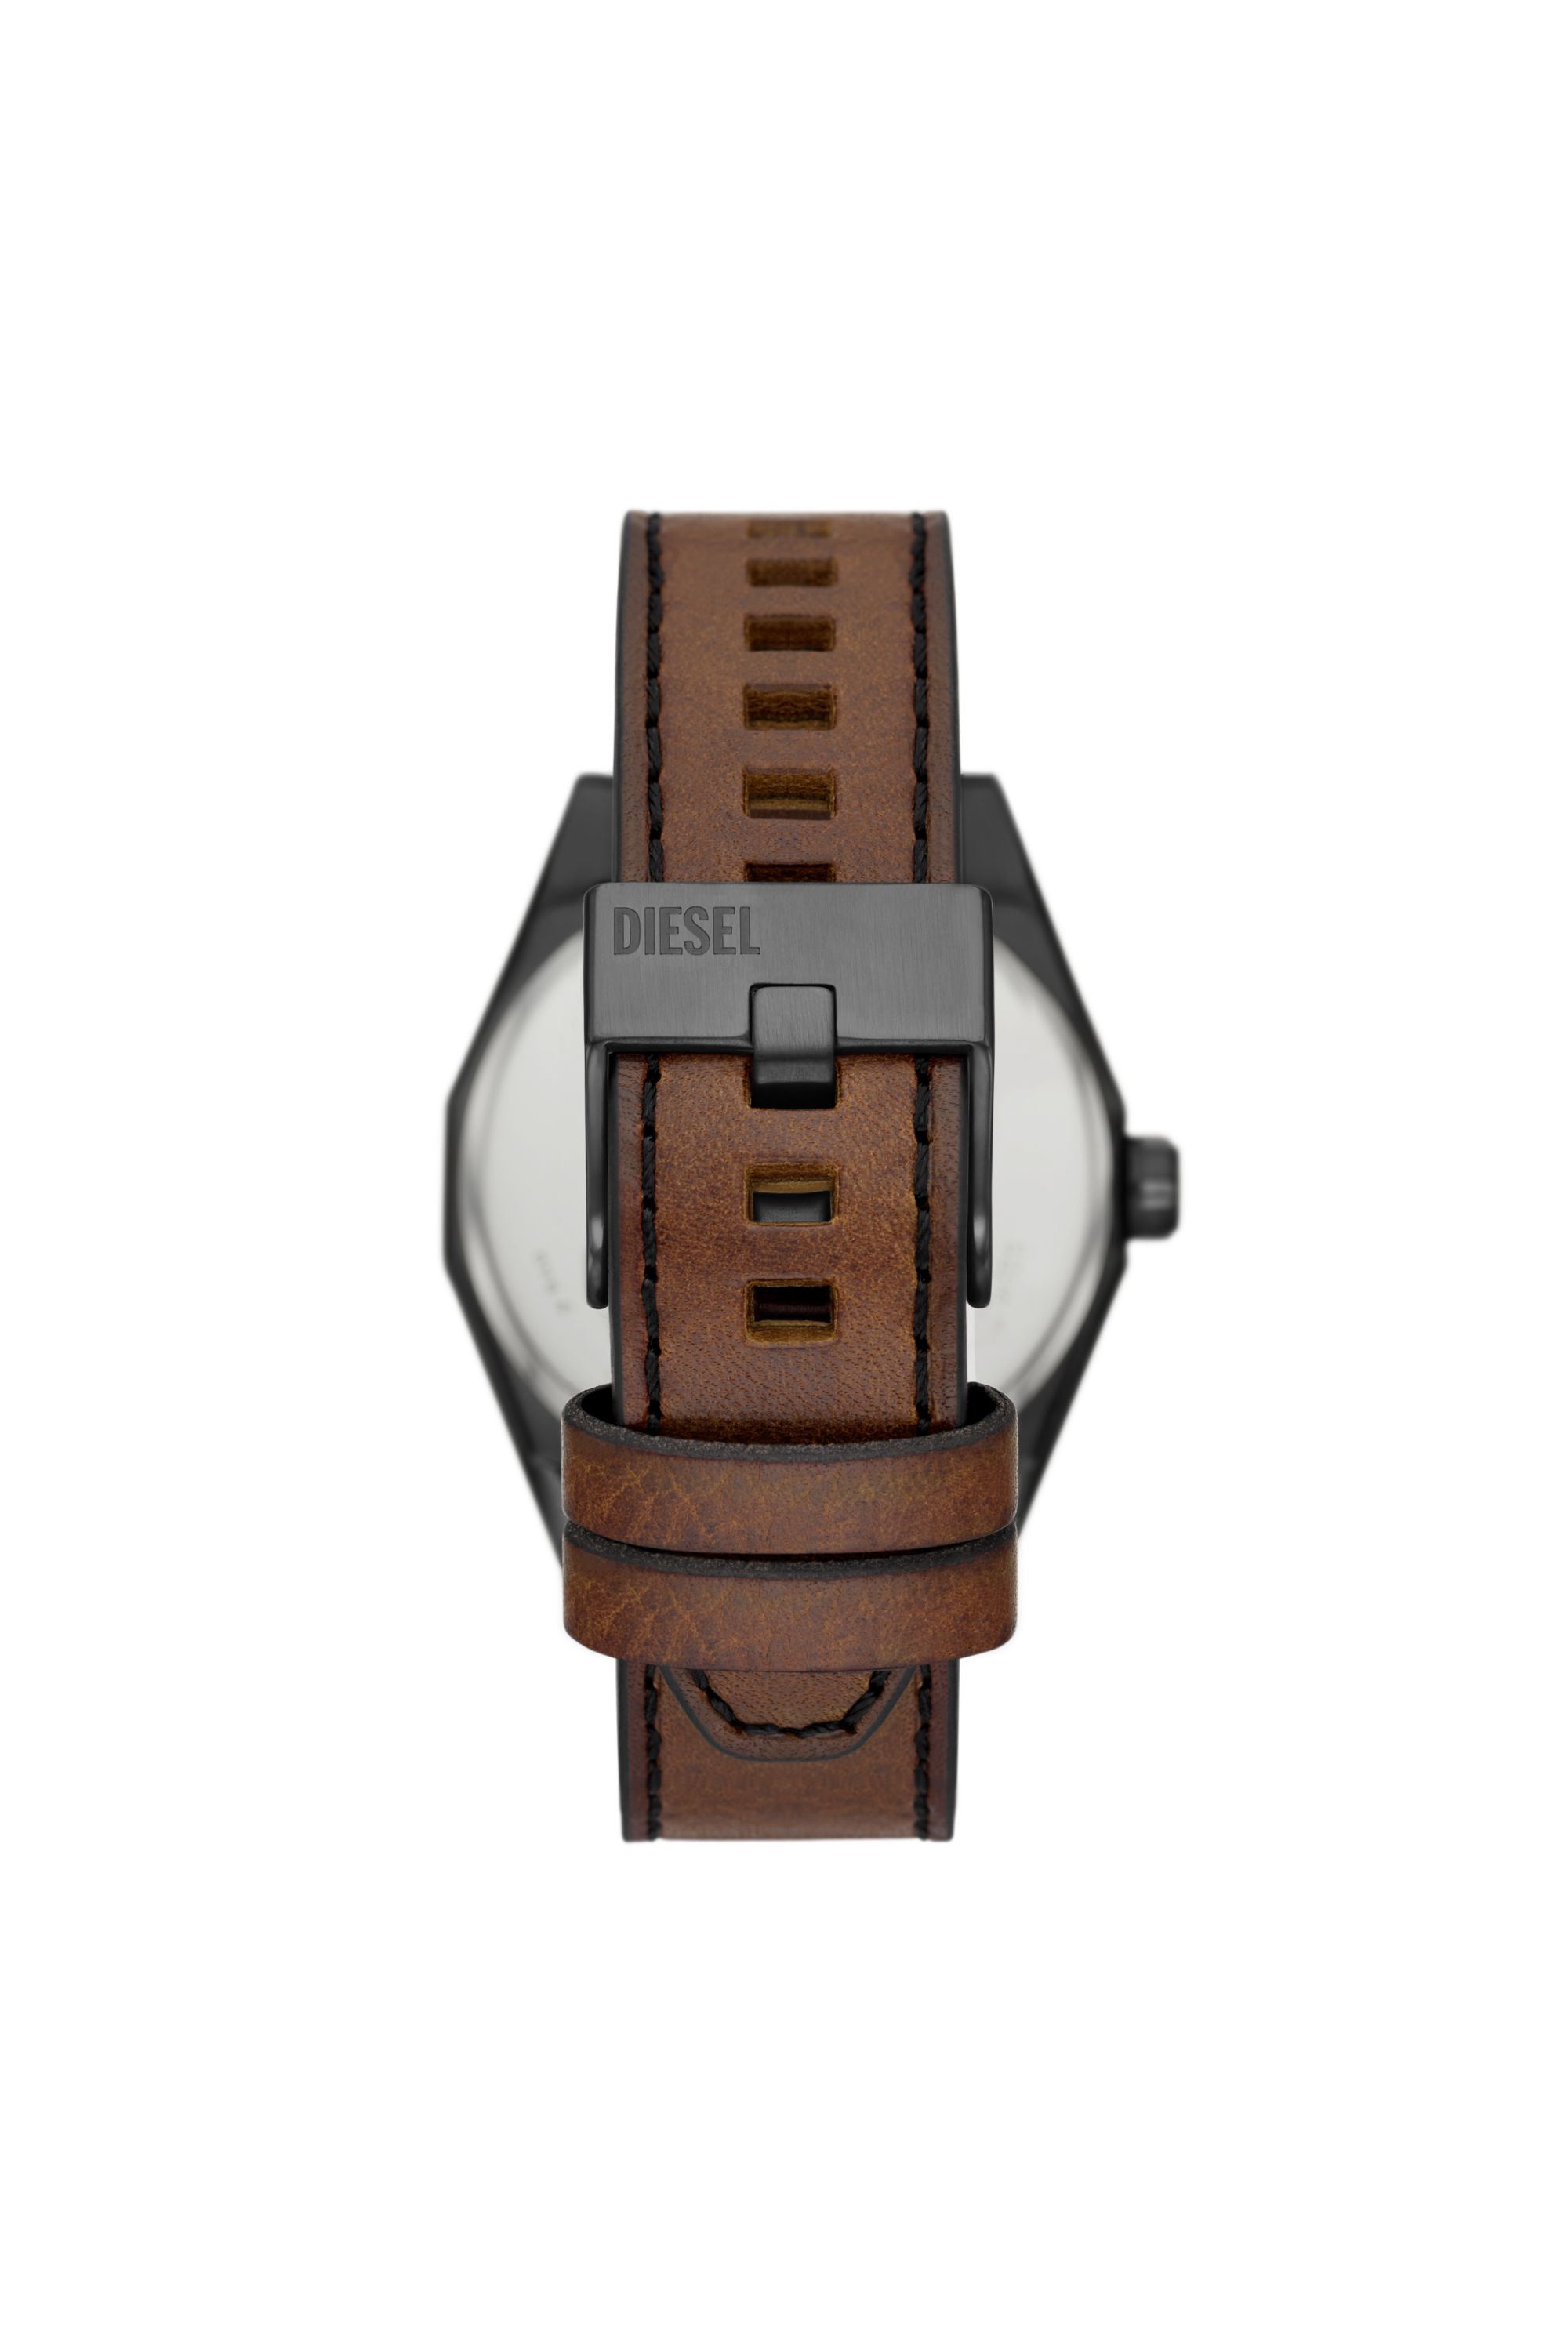 Diesel's 44mm Scraper watch for Man | Diesel DZ2189